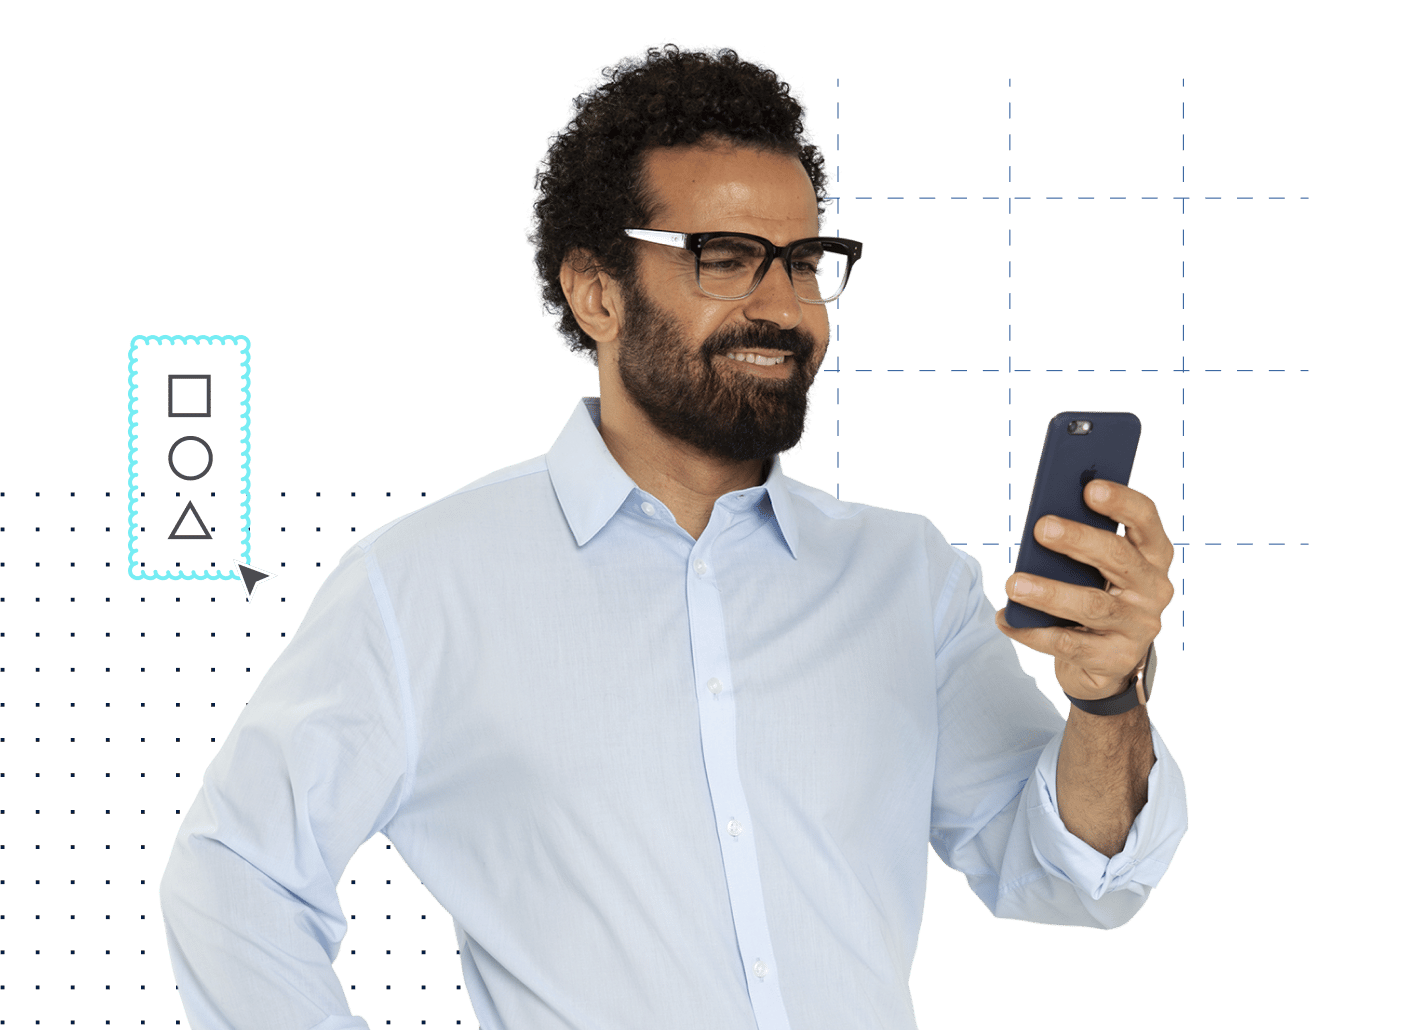 mandlig arkitekt i skjorte med briller, der kigger på en mobil enhed